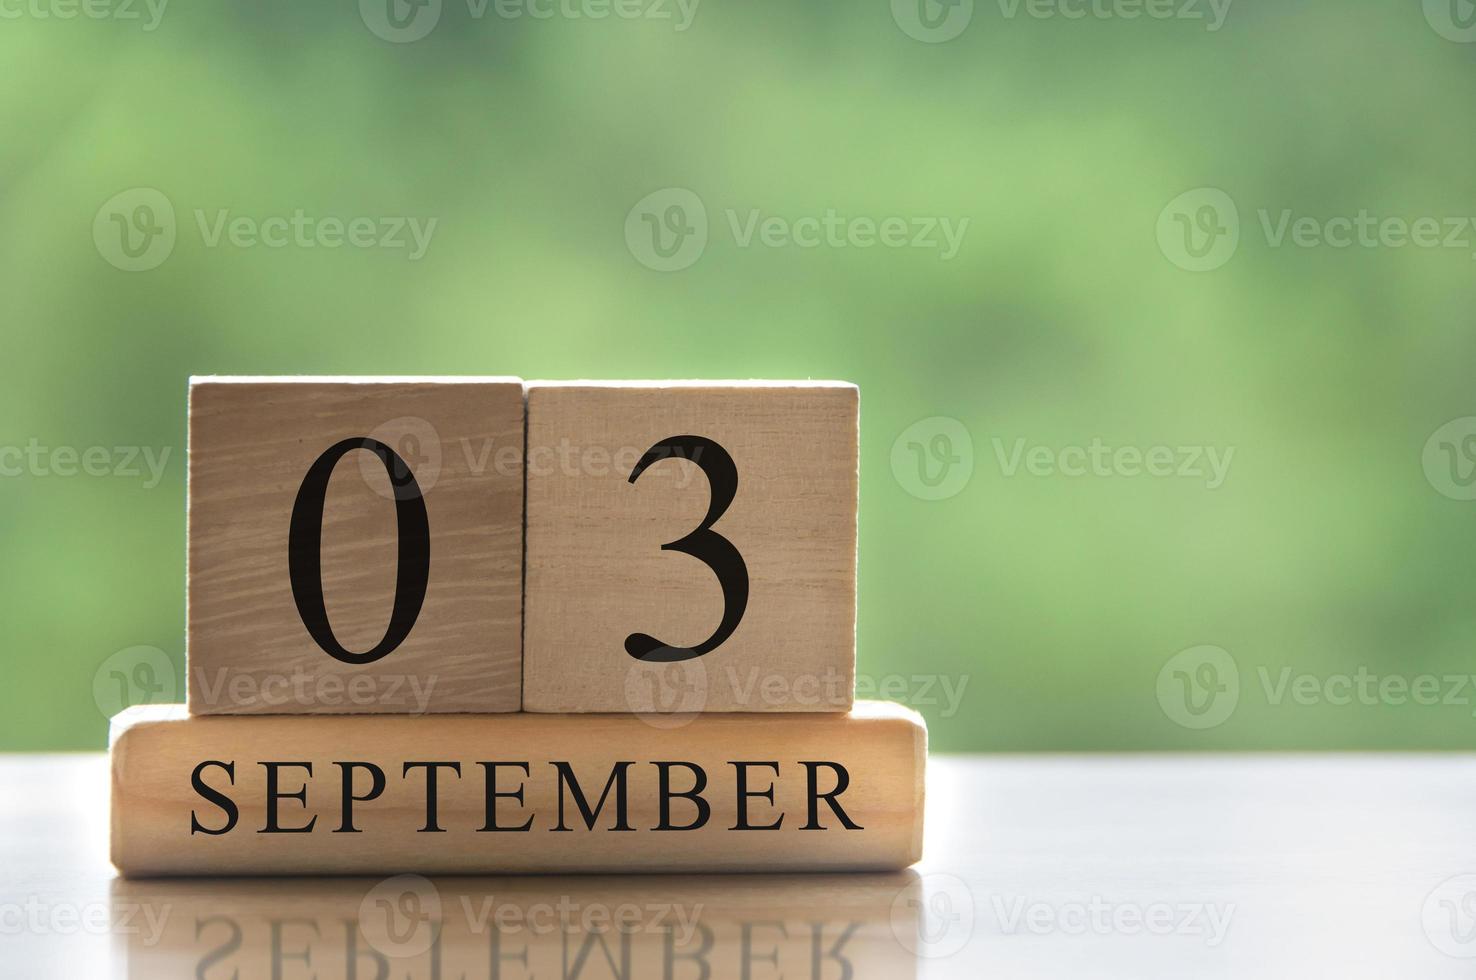 3. september kalenderdatumstext auf holzklötzen mit kopierraum für ideen. kopierraum und kalenderkonzept foto